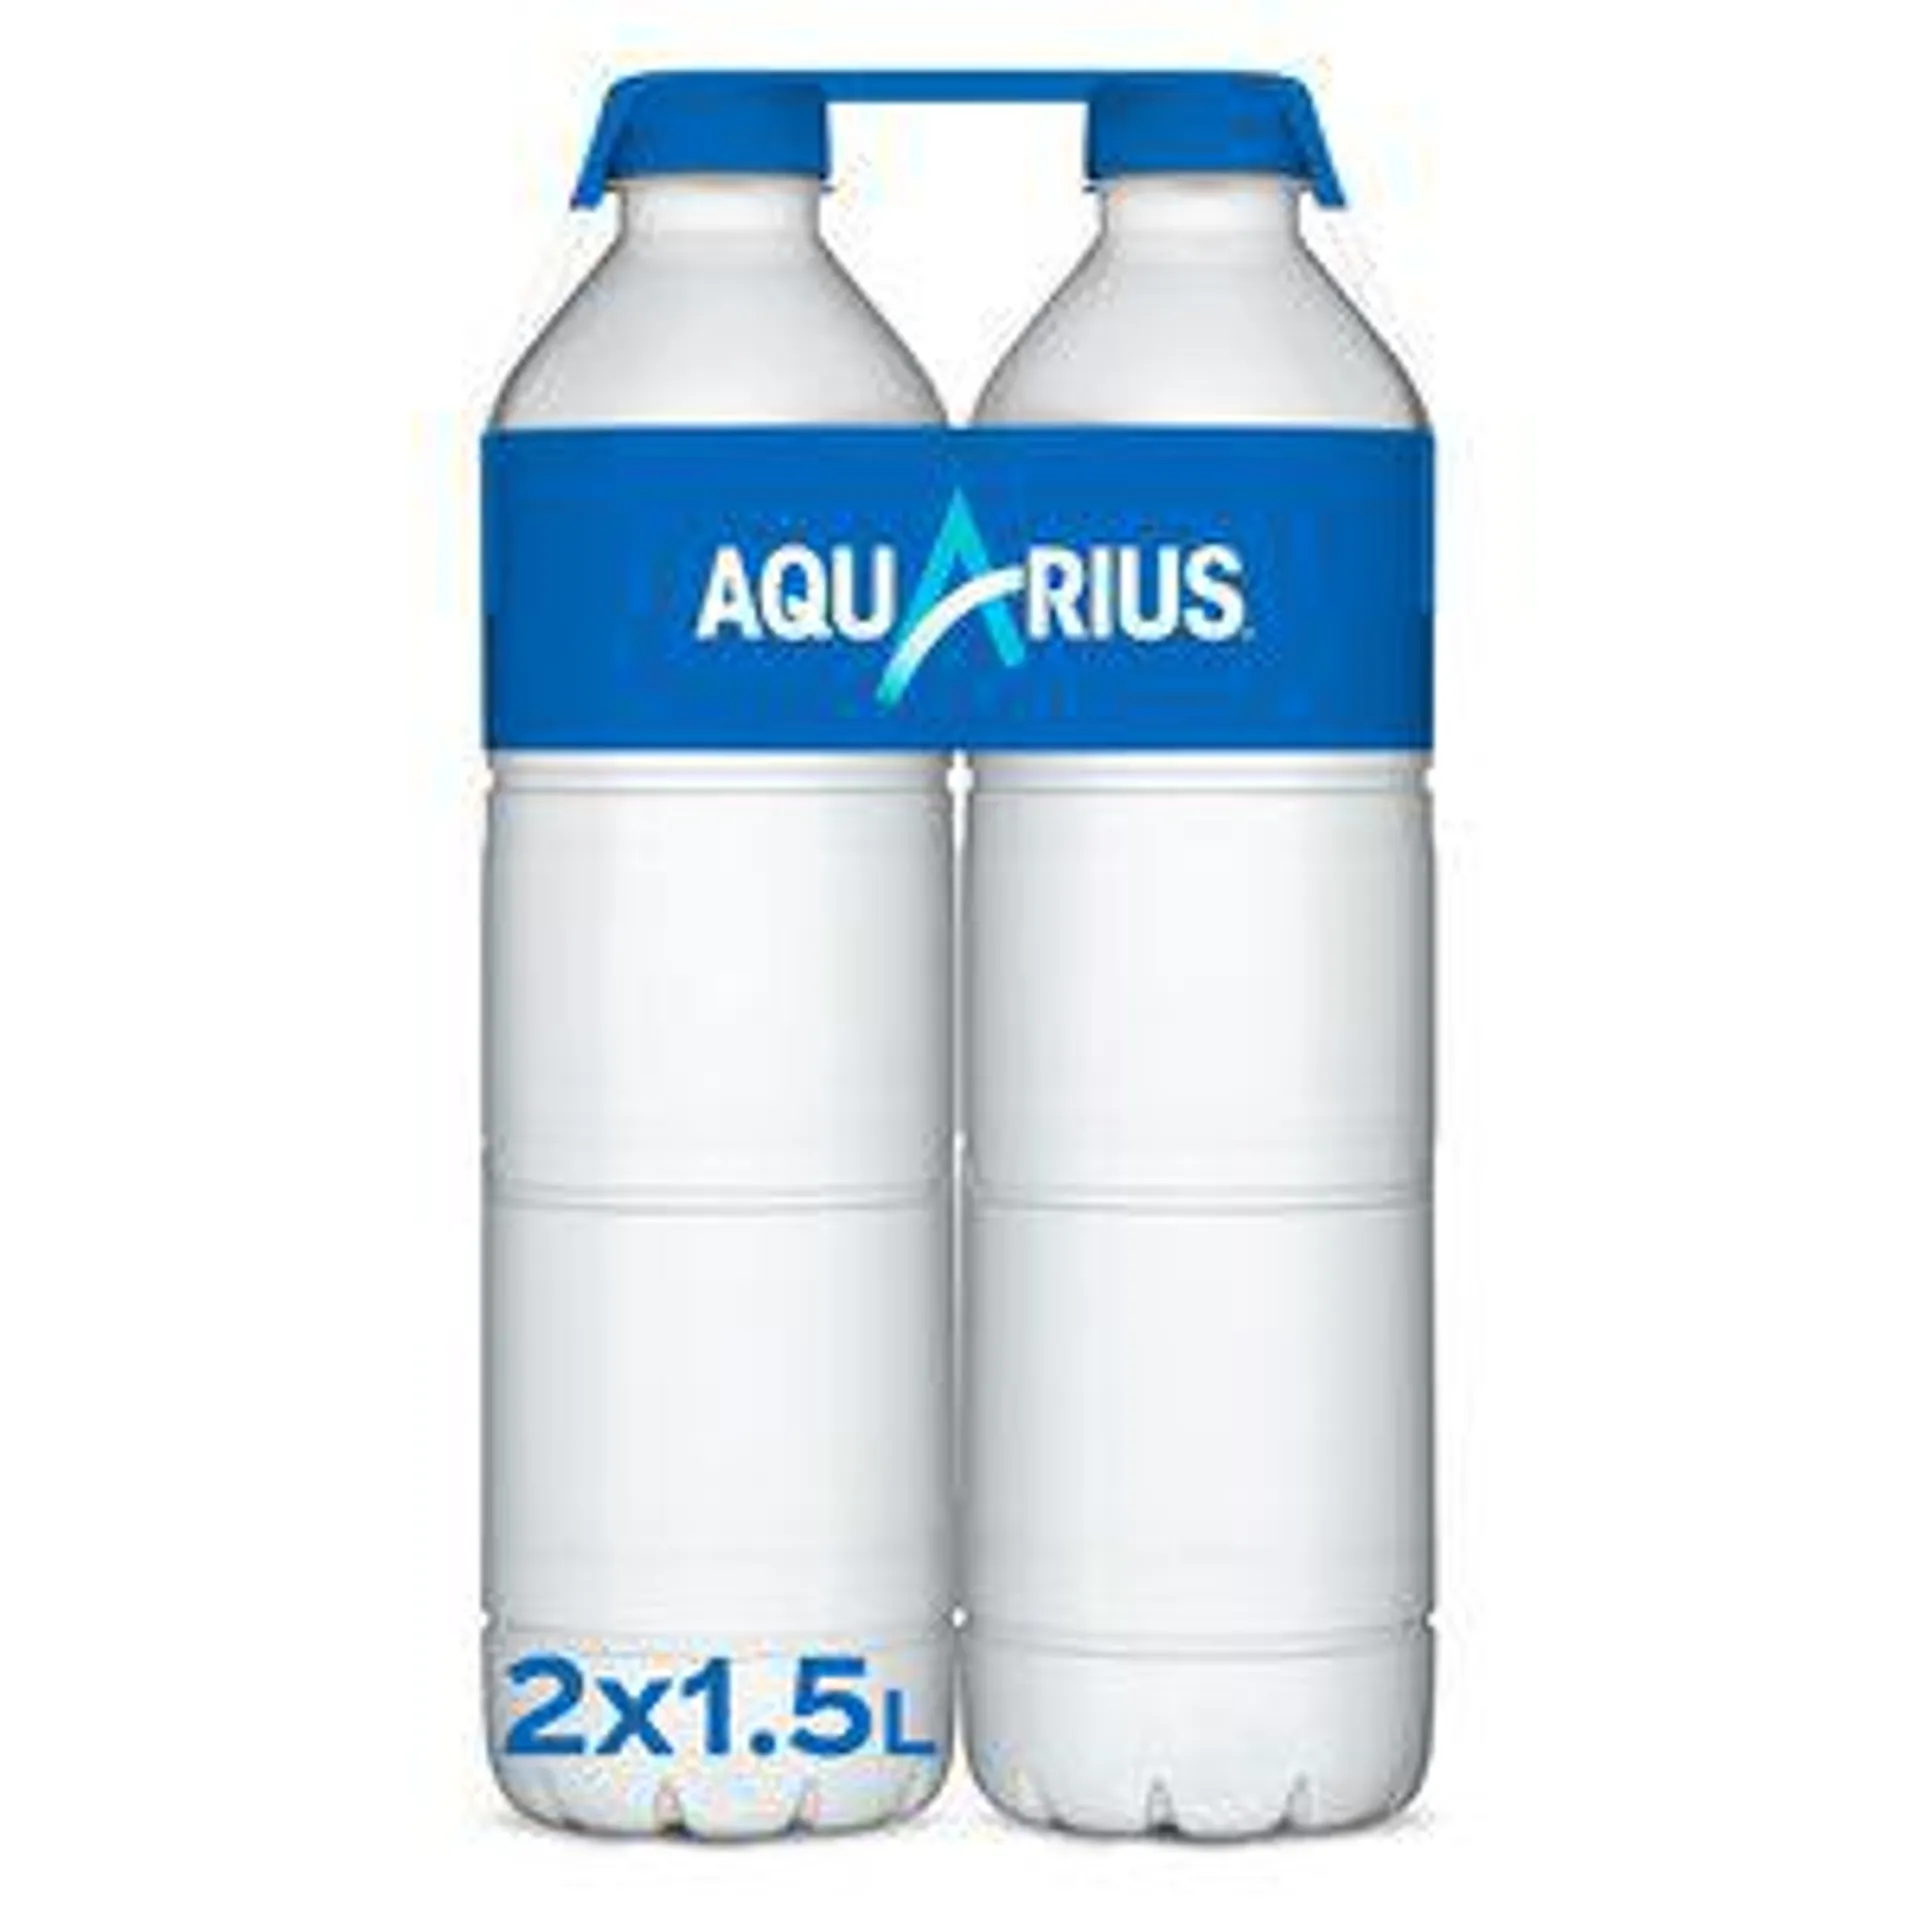 AQUARIUS bebida refrescante de limón pack 2 botellas 1.5 lt